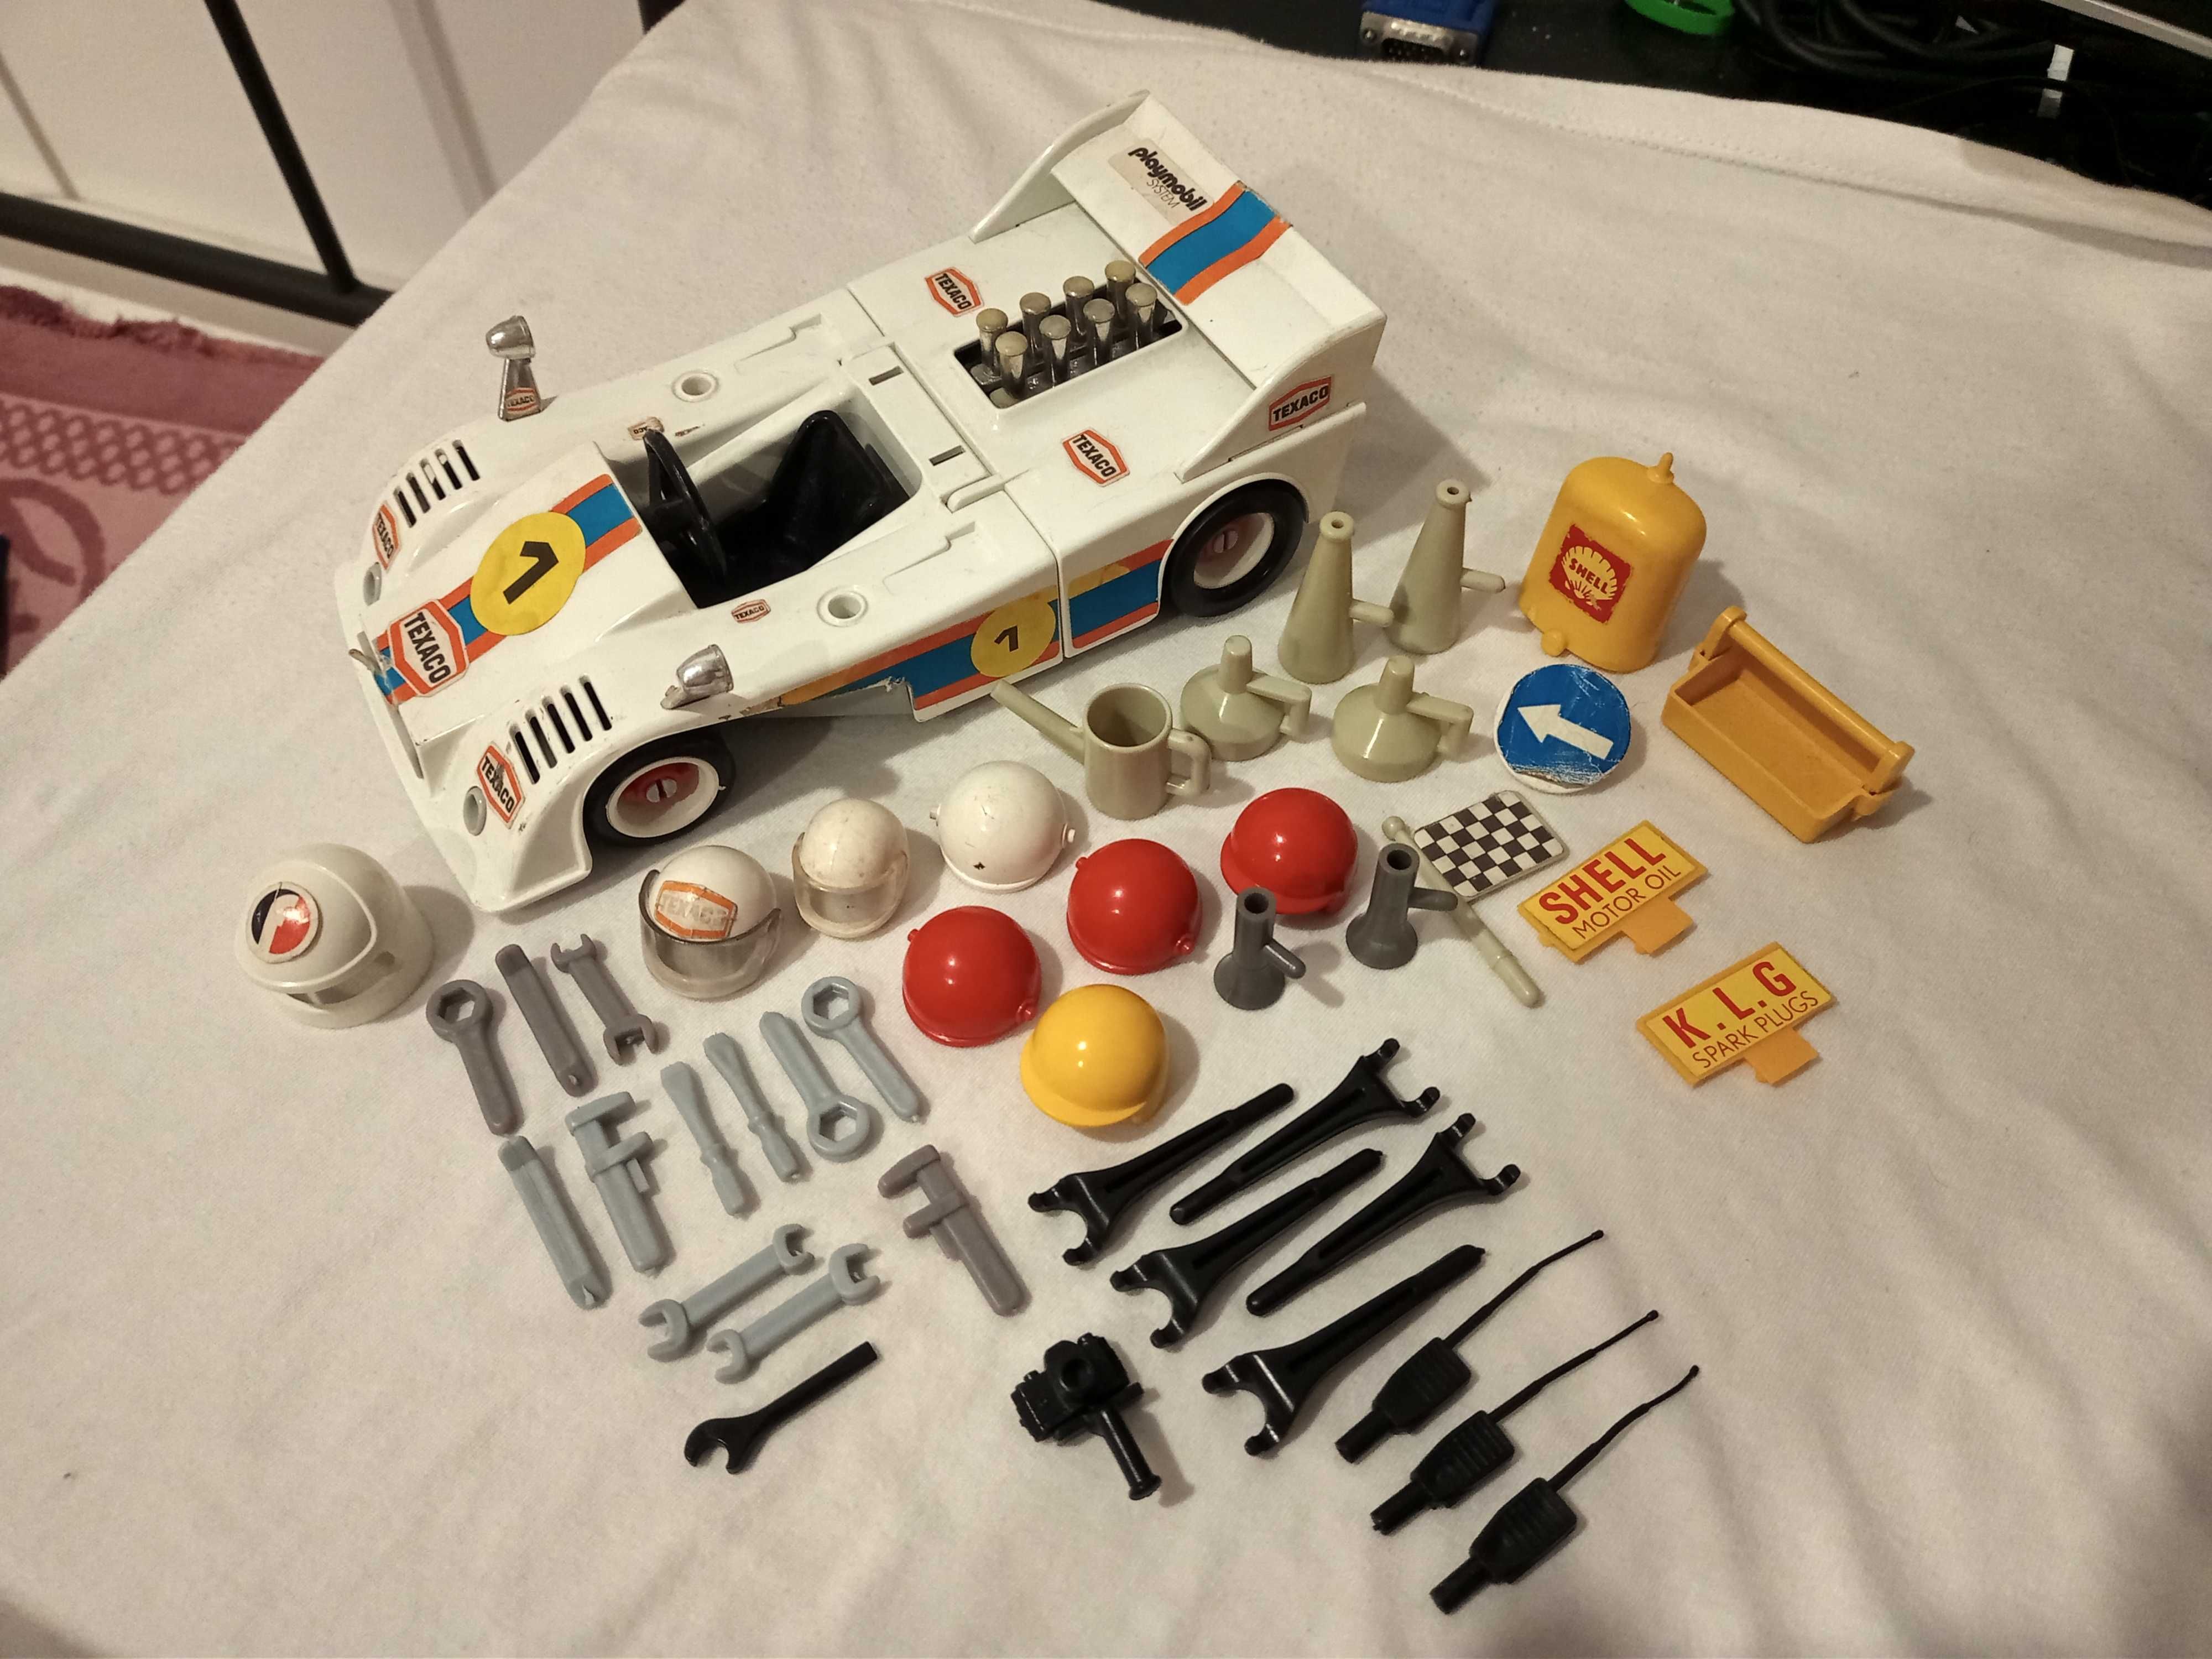 Playmobil e Lego - Coleção